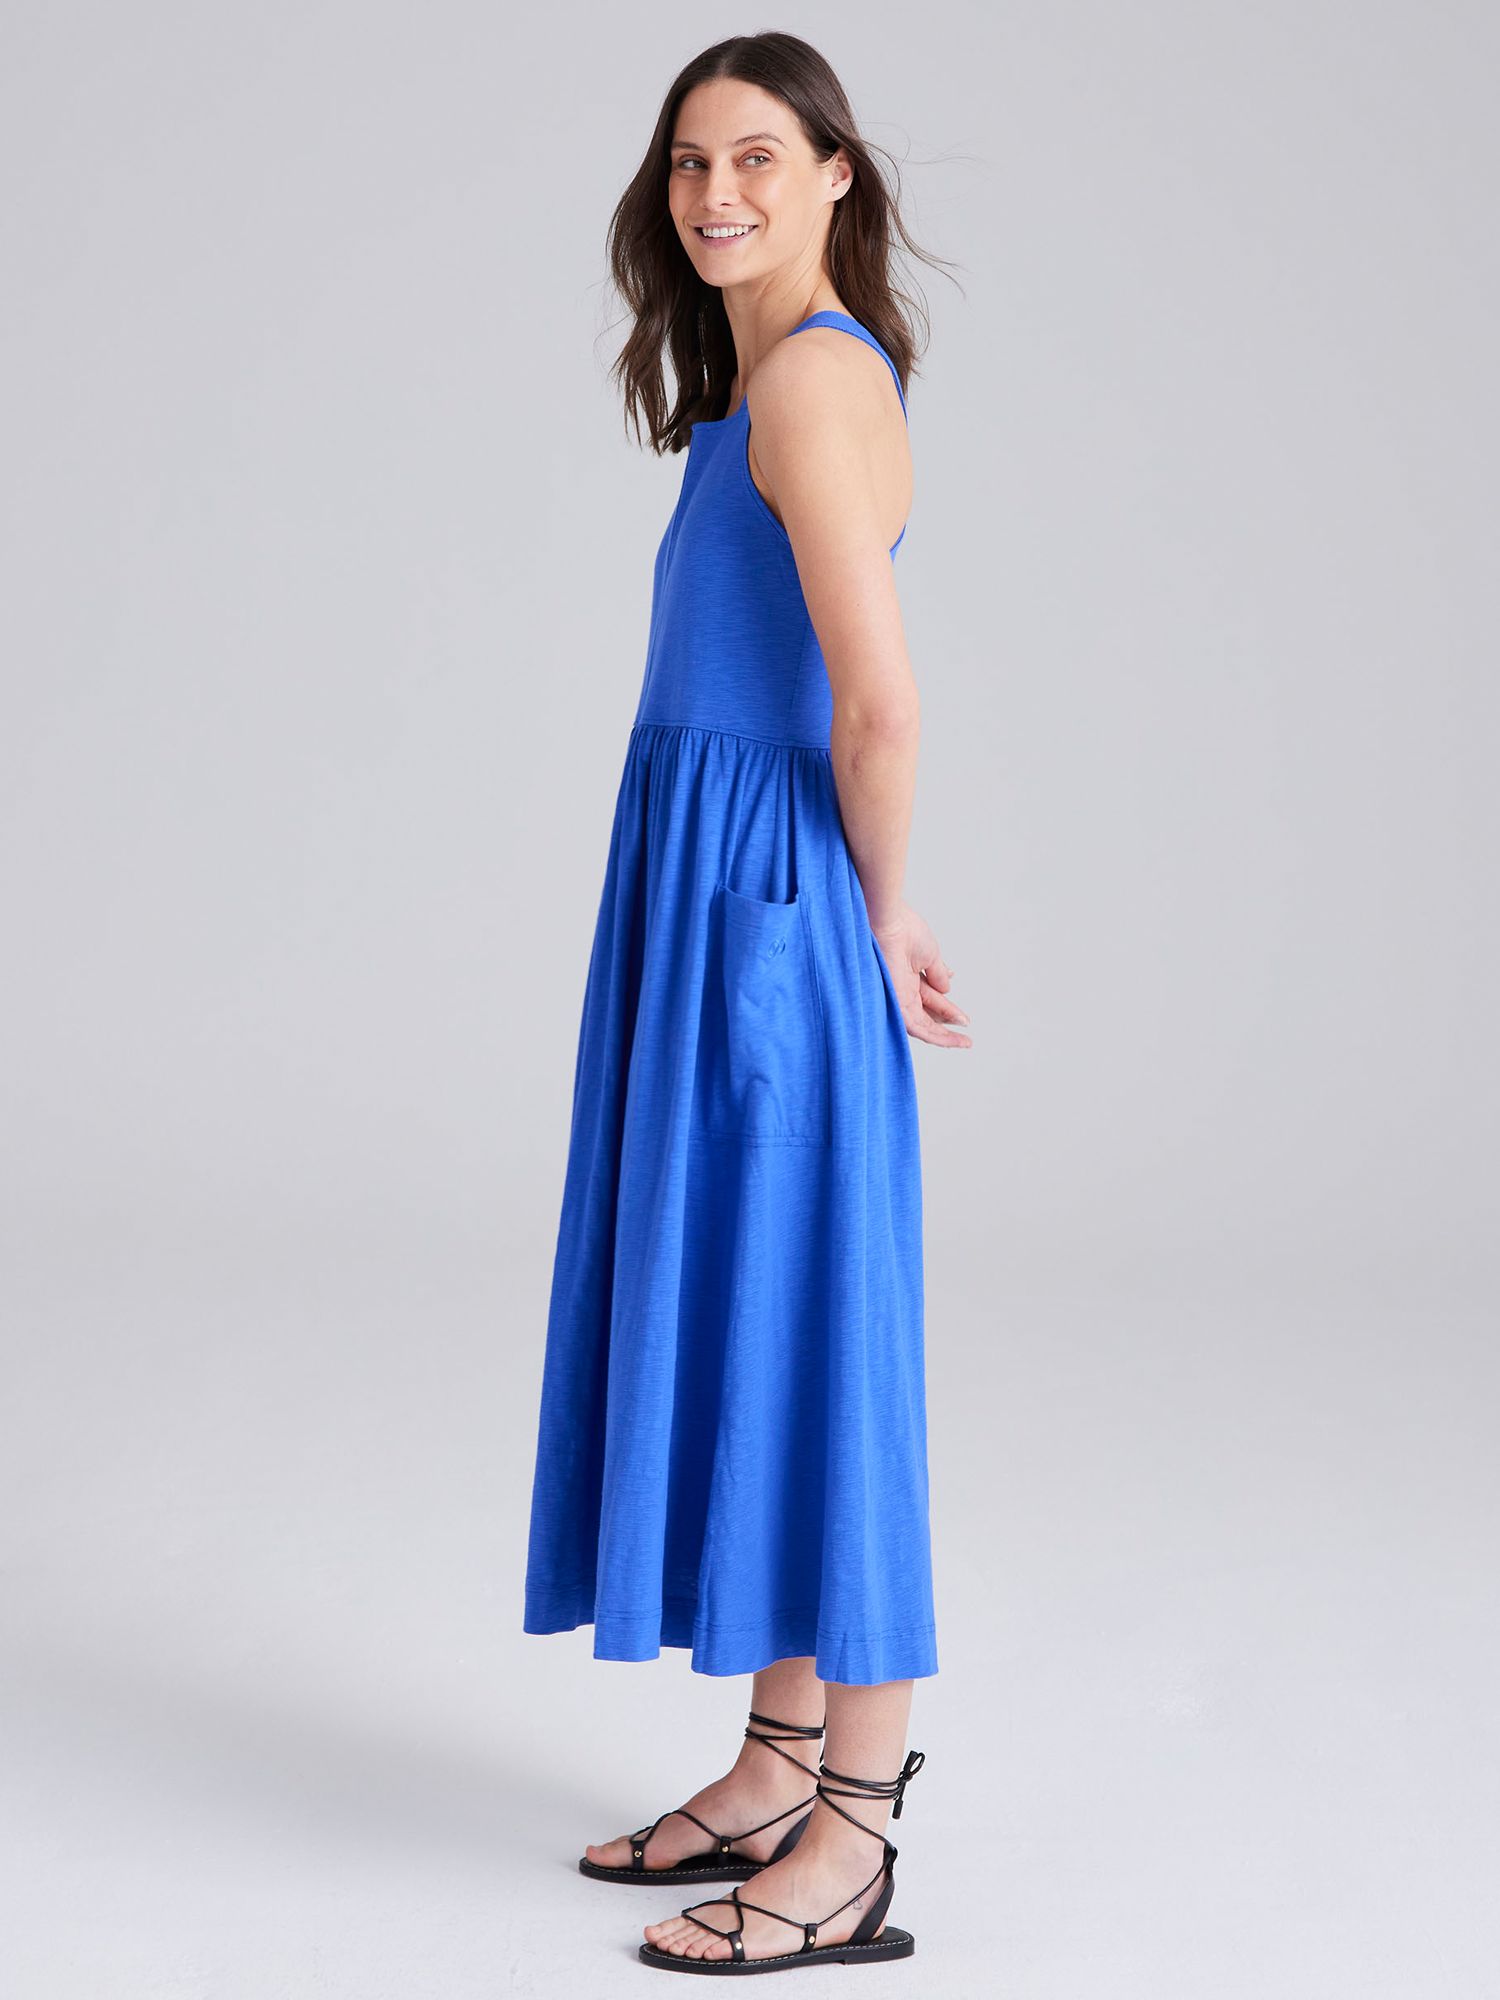 Cape Cove Square Neck Midi Dress, Dazzling Blue, XL